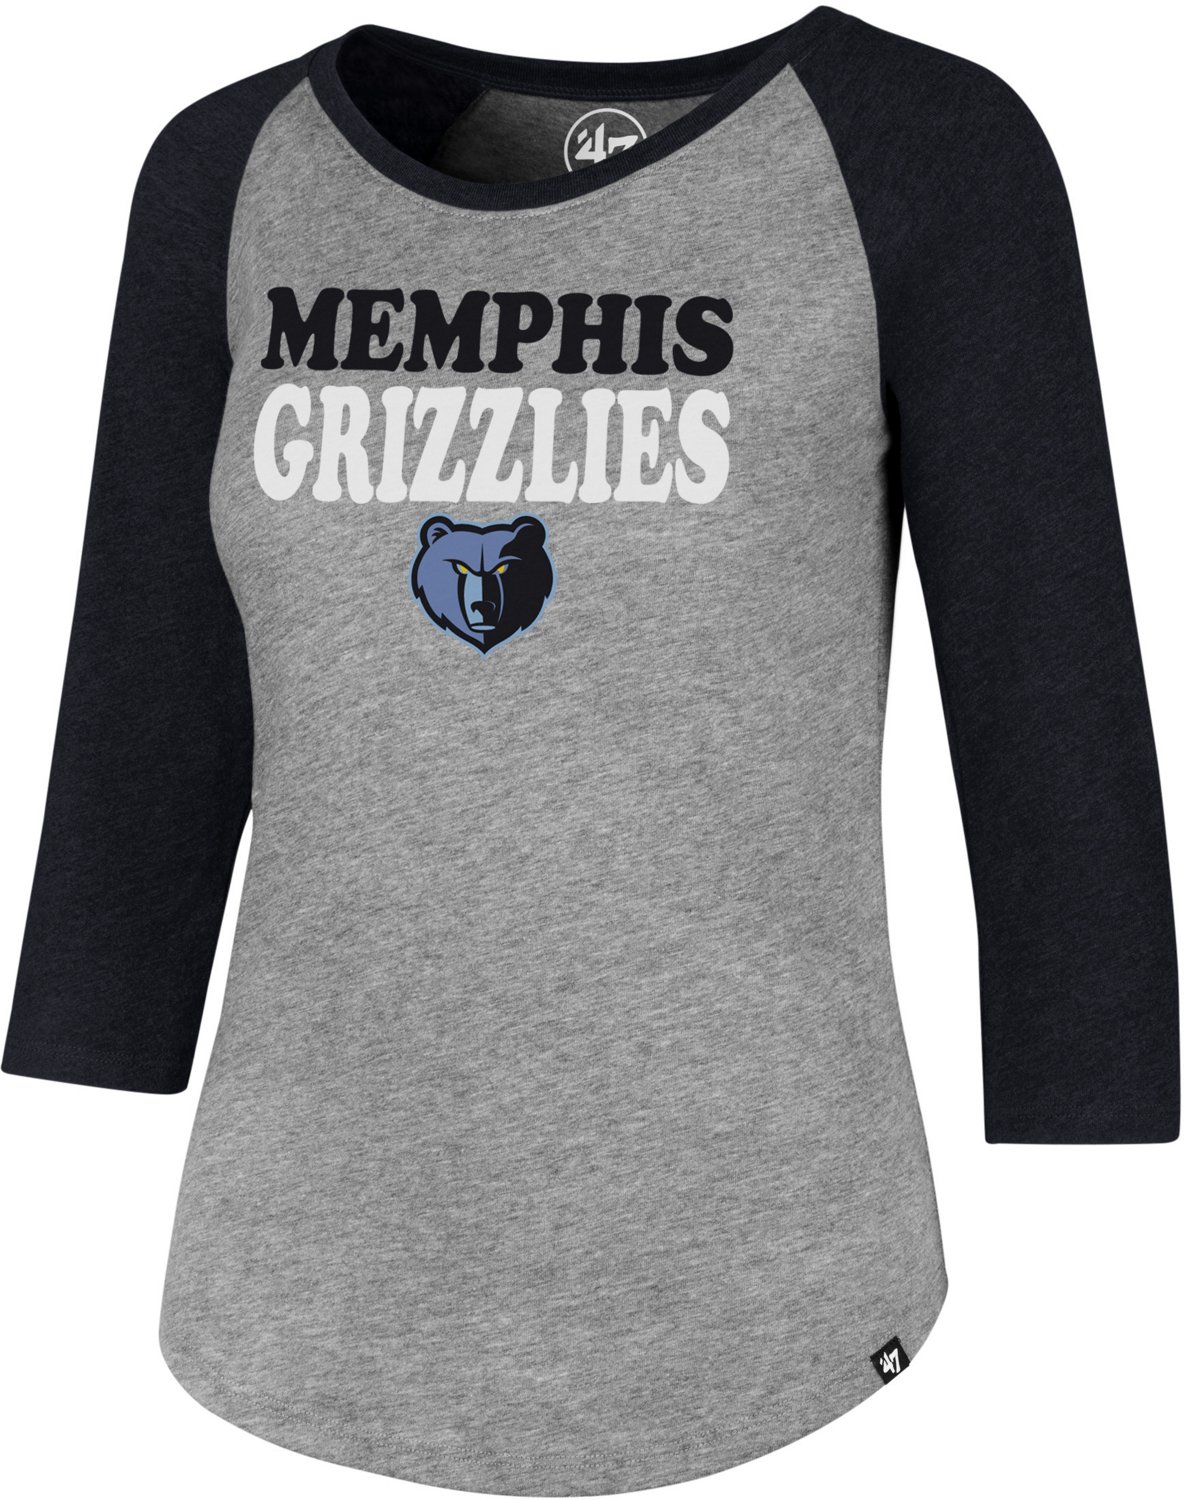 women's memphis grizzlies shirt